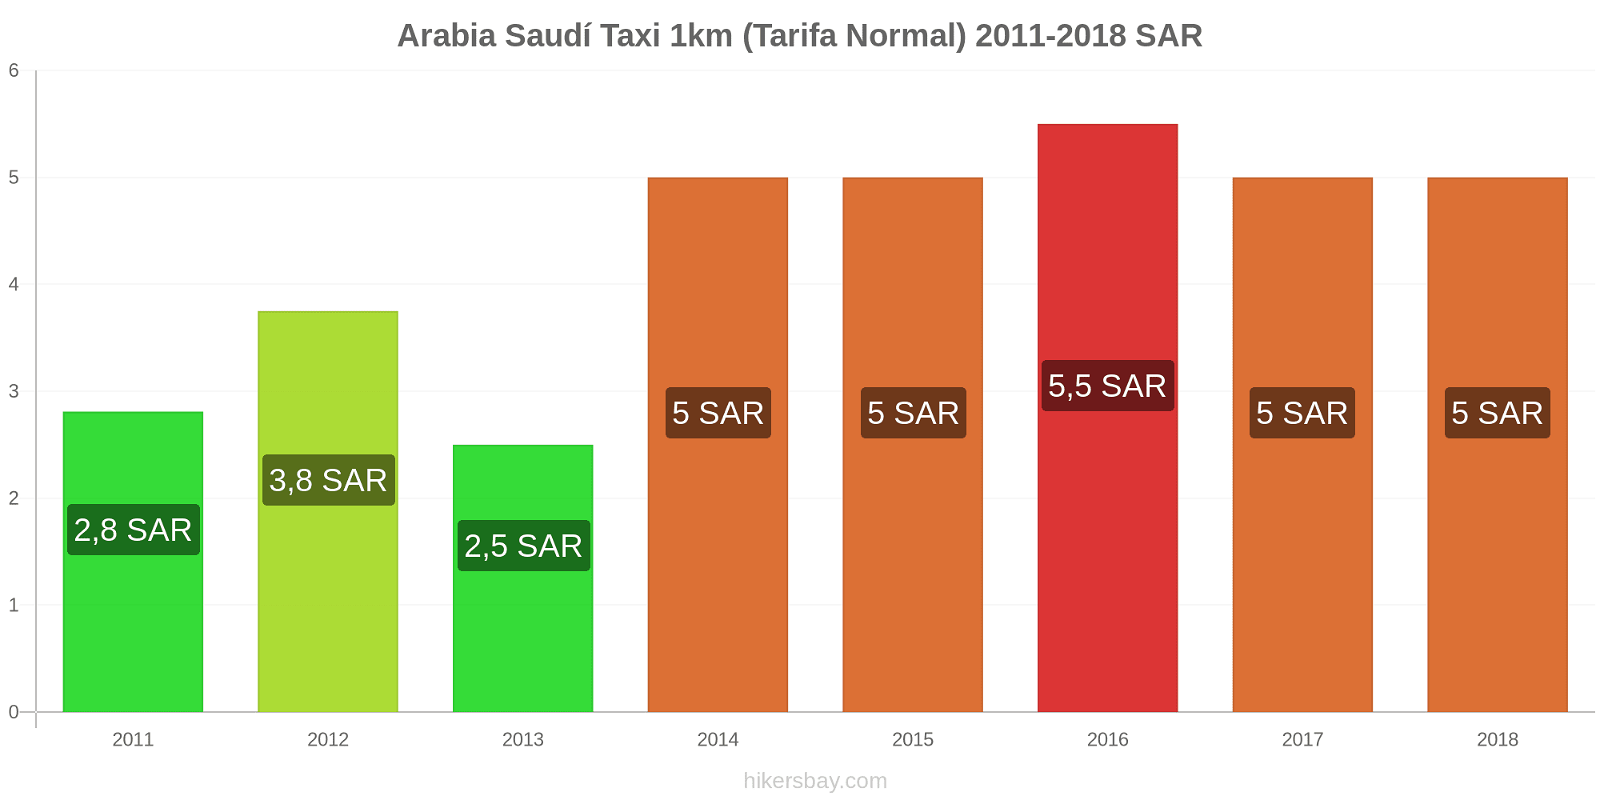 Arabia Saudí cambios de precios Taxi 1km (tarifa normal) hikersbay.com